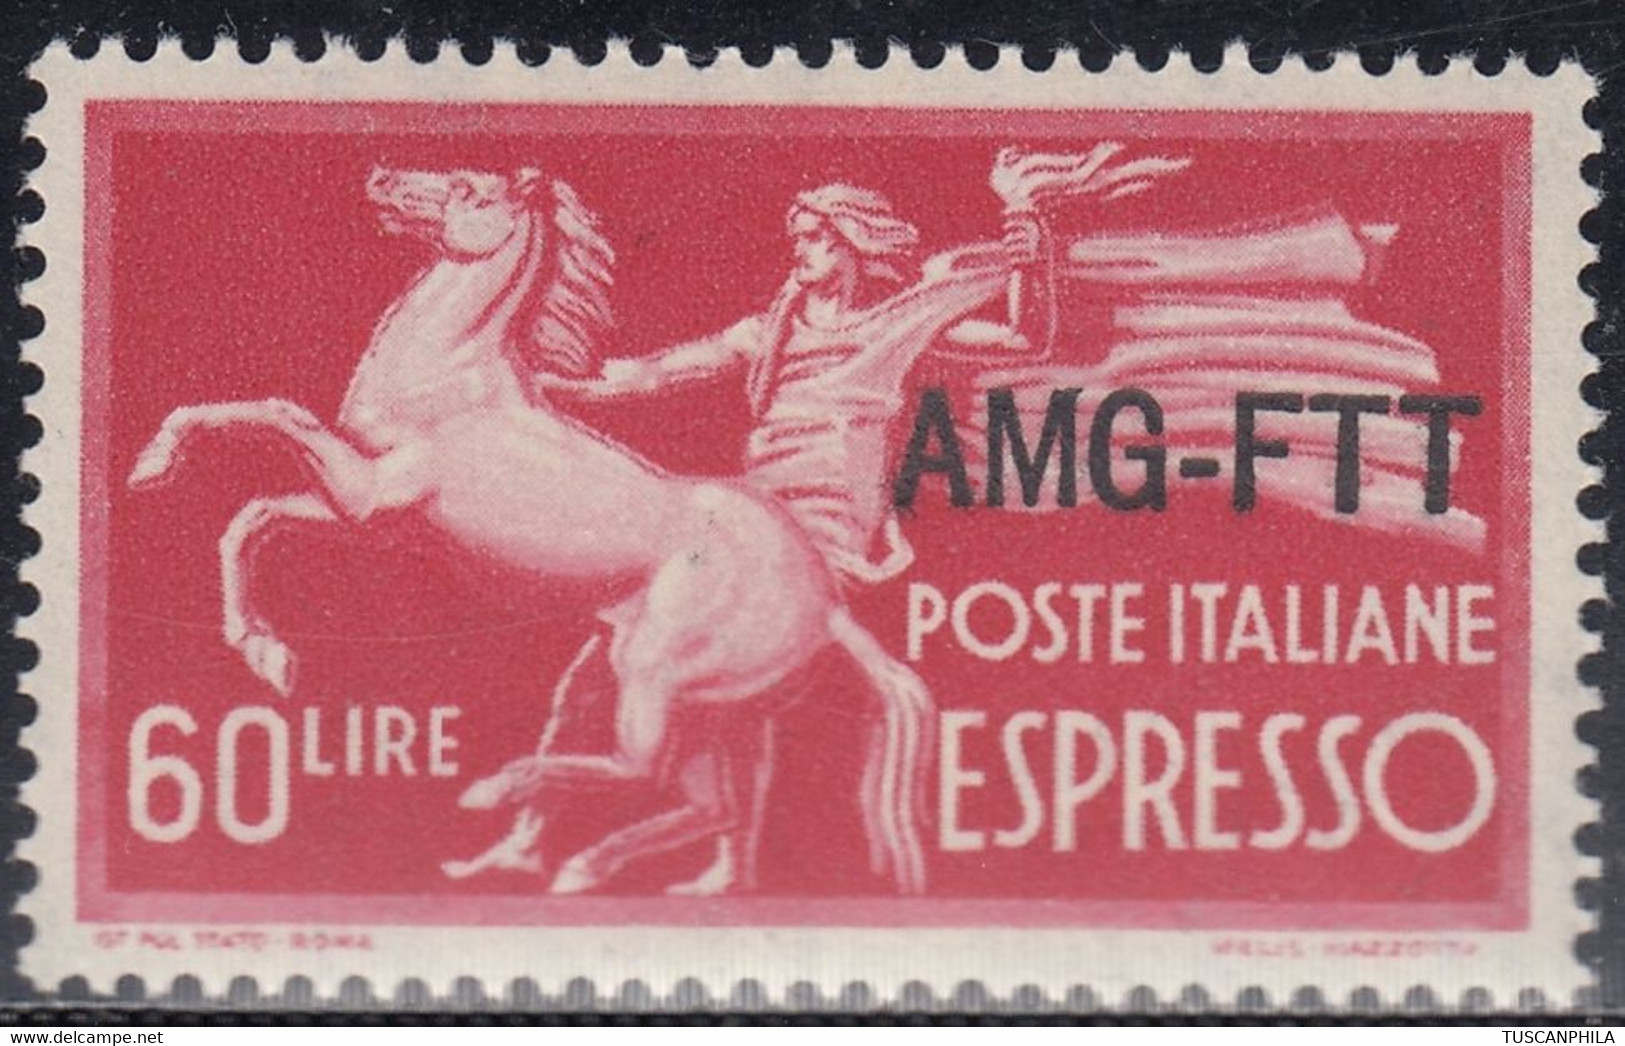 Trieste AMG-FTT Espressi Sass. 6 MNH** Cv 12 - Express Mail